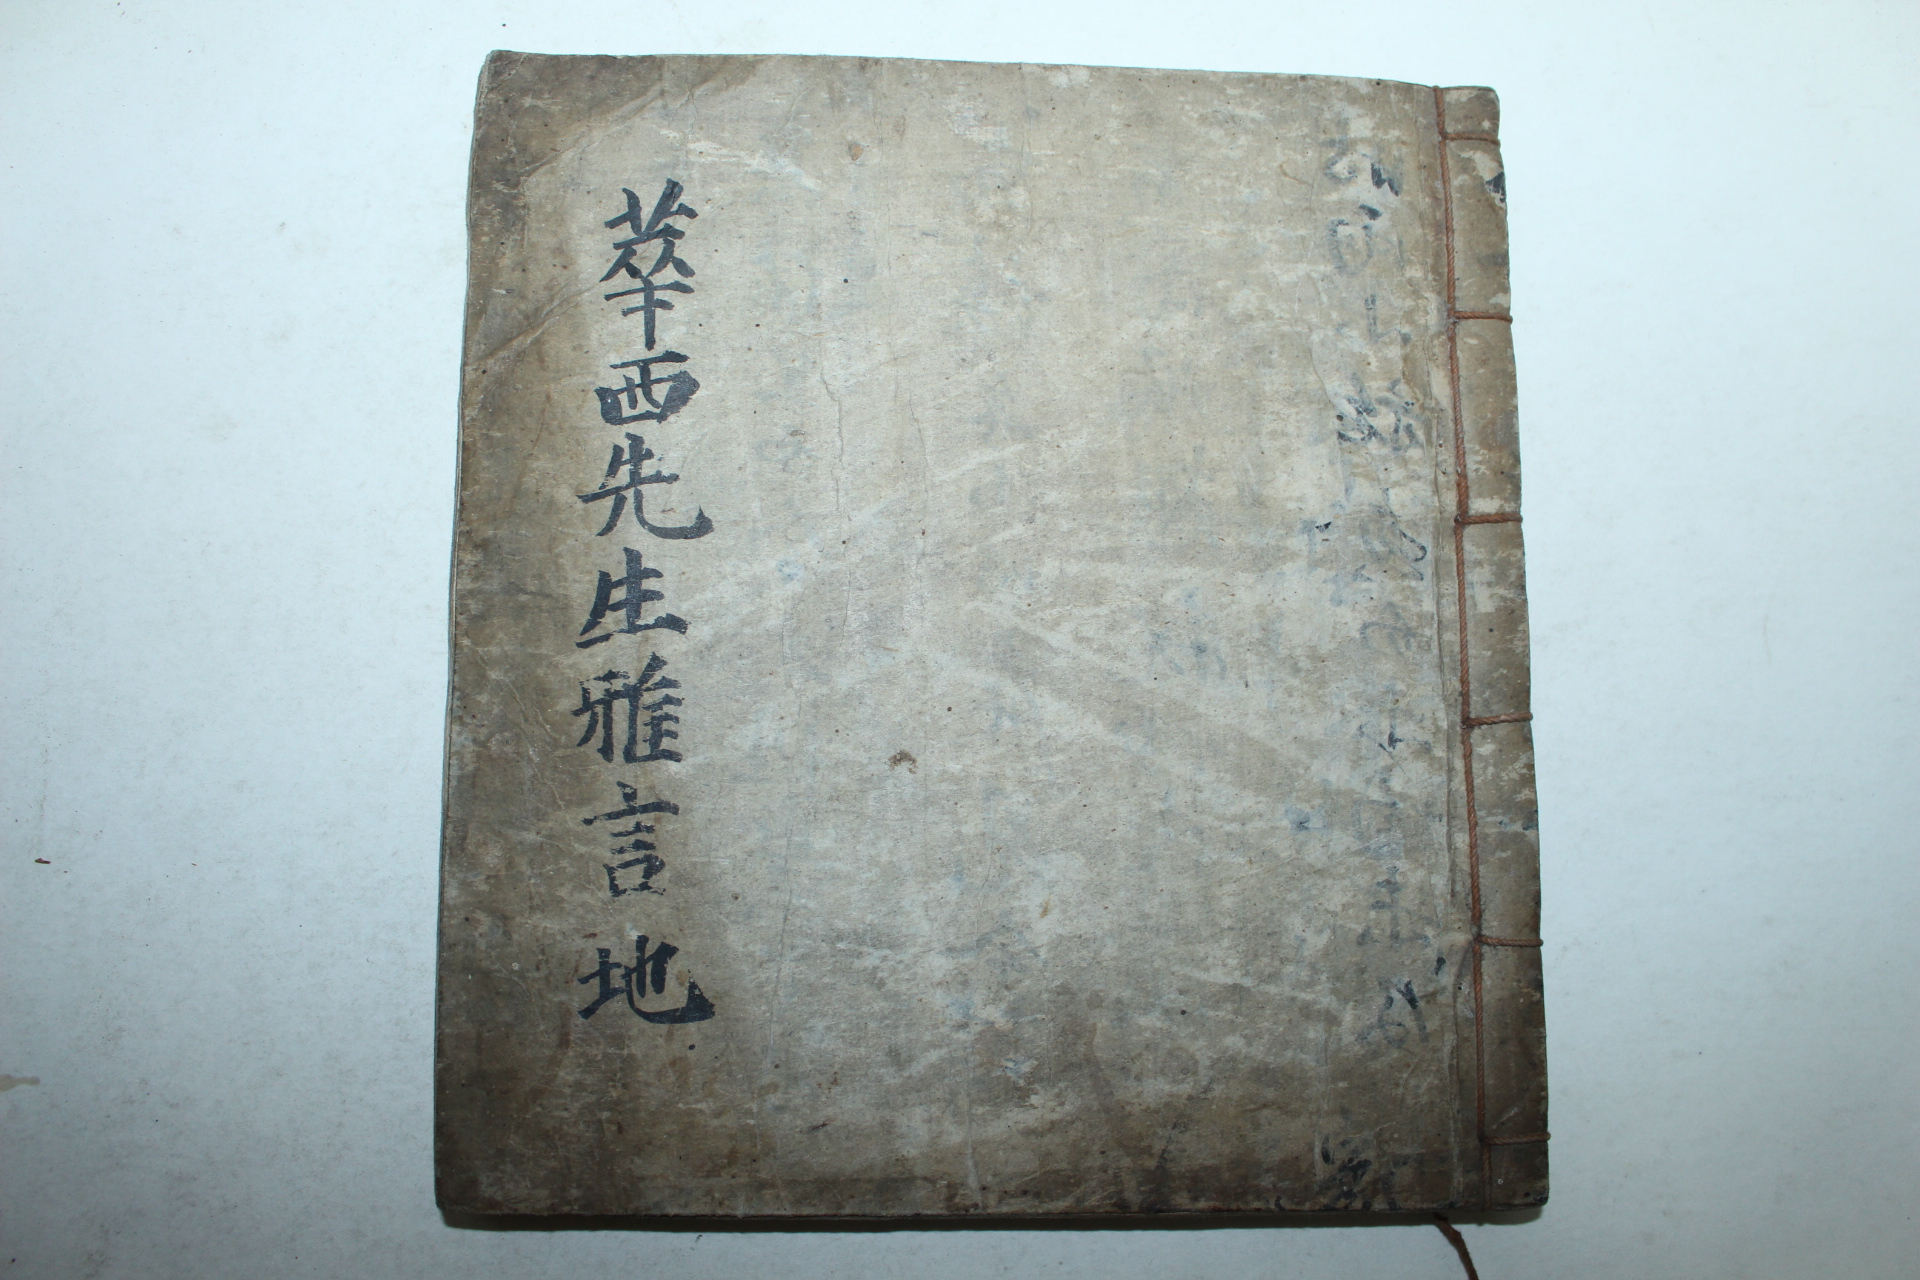 조선시대 필사본 화서선생아언(華西先生雅言) 1책